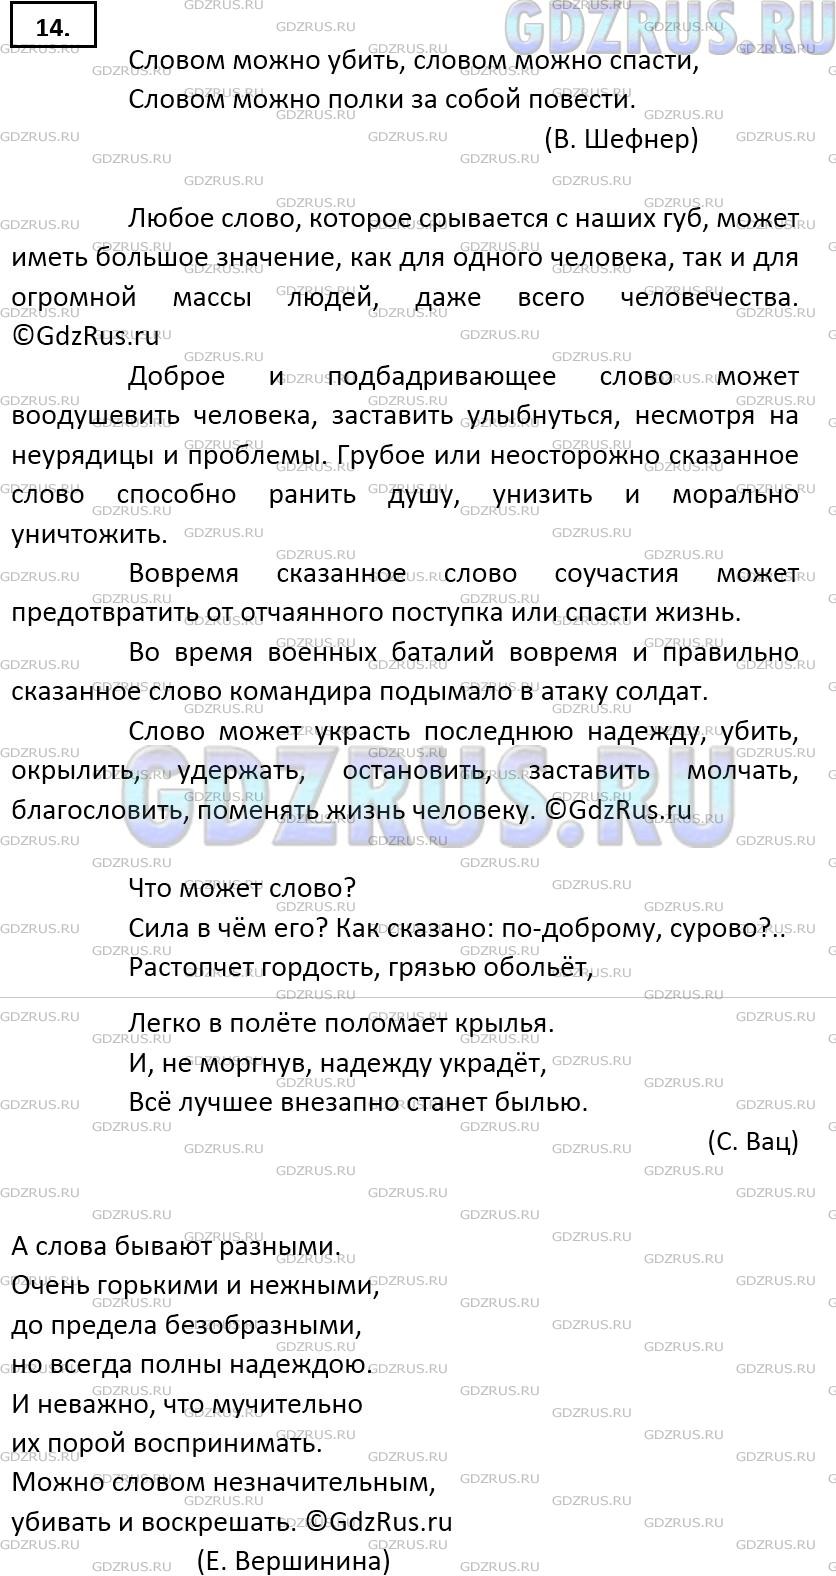 Фото решения 5: ГДЗ по Русскому языку 9 класса: Ладыженская Упр. 14